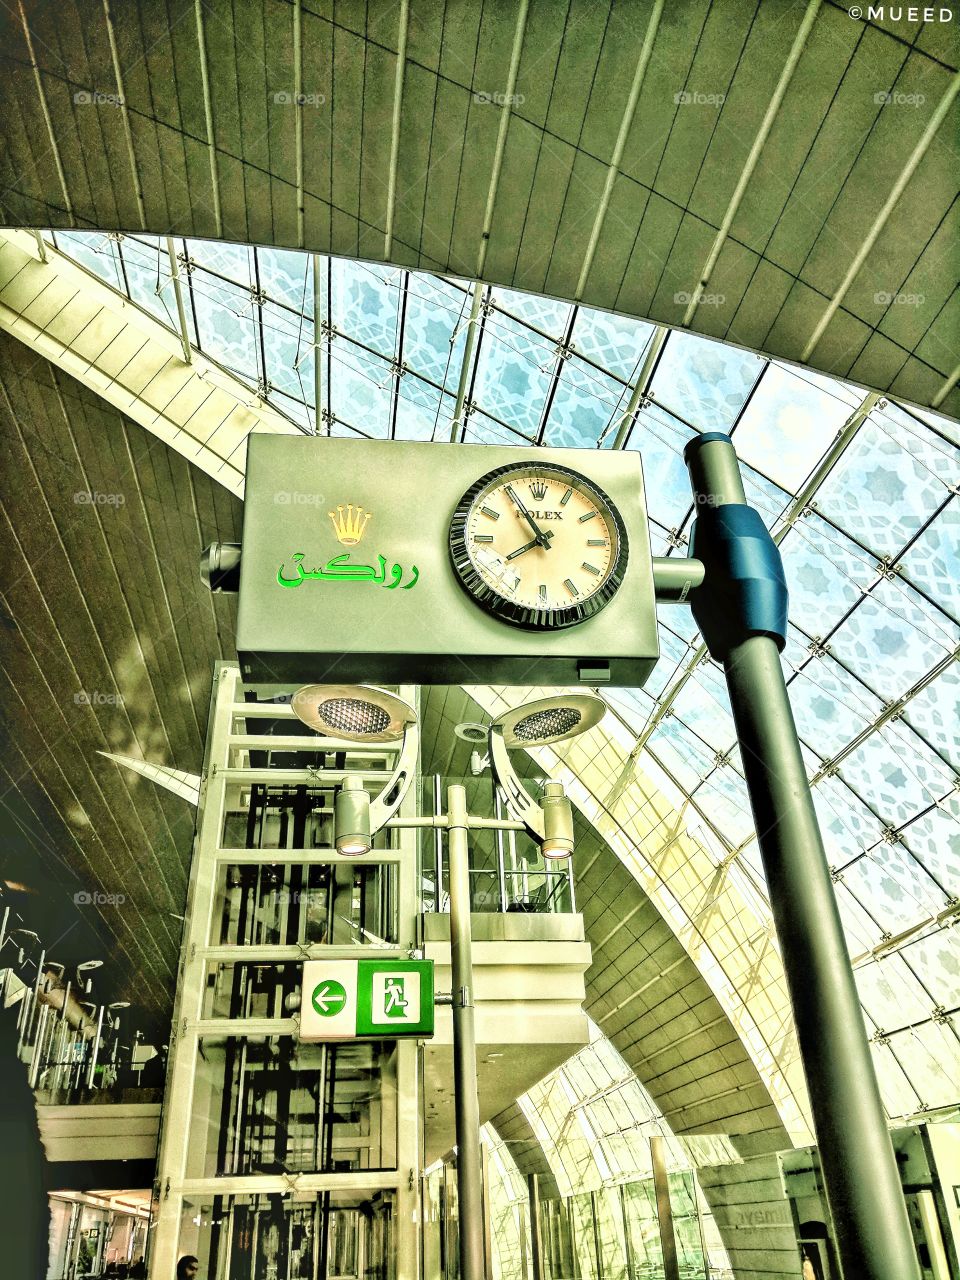 Rolex at Dubai Airport, Dubai